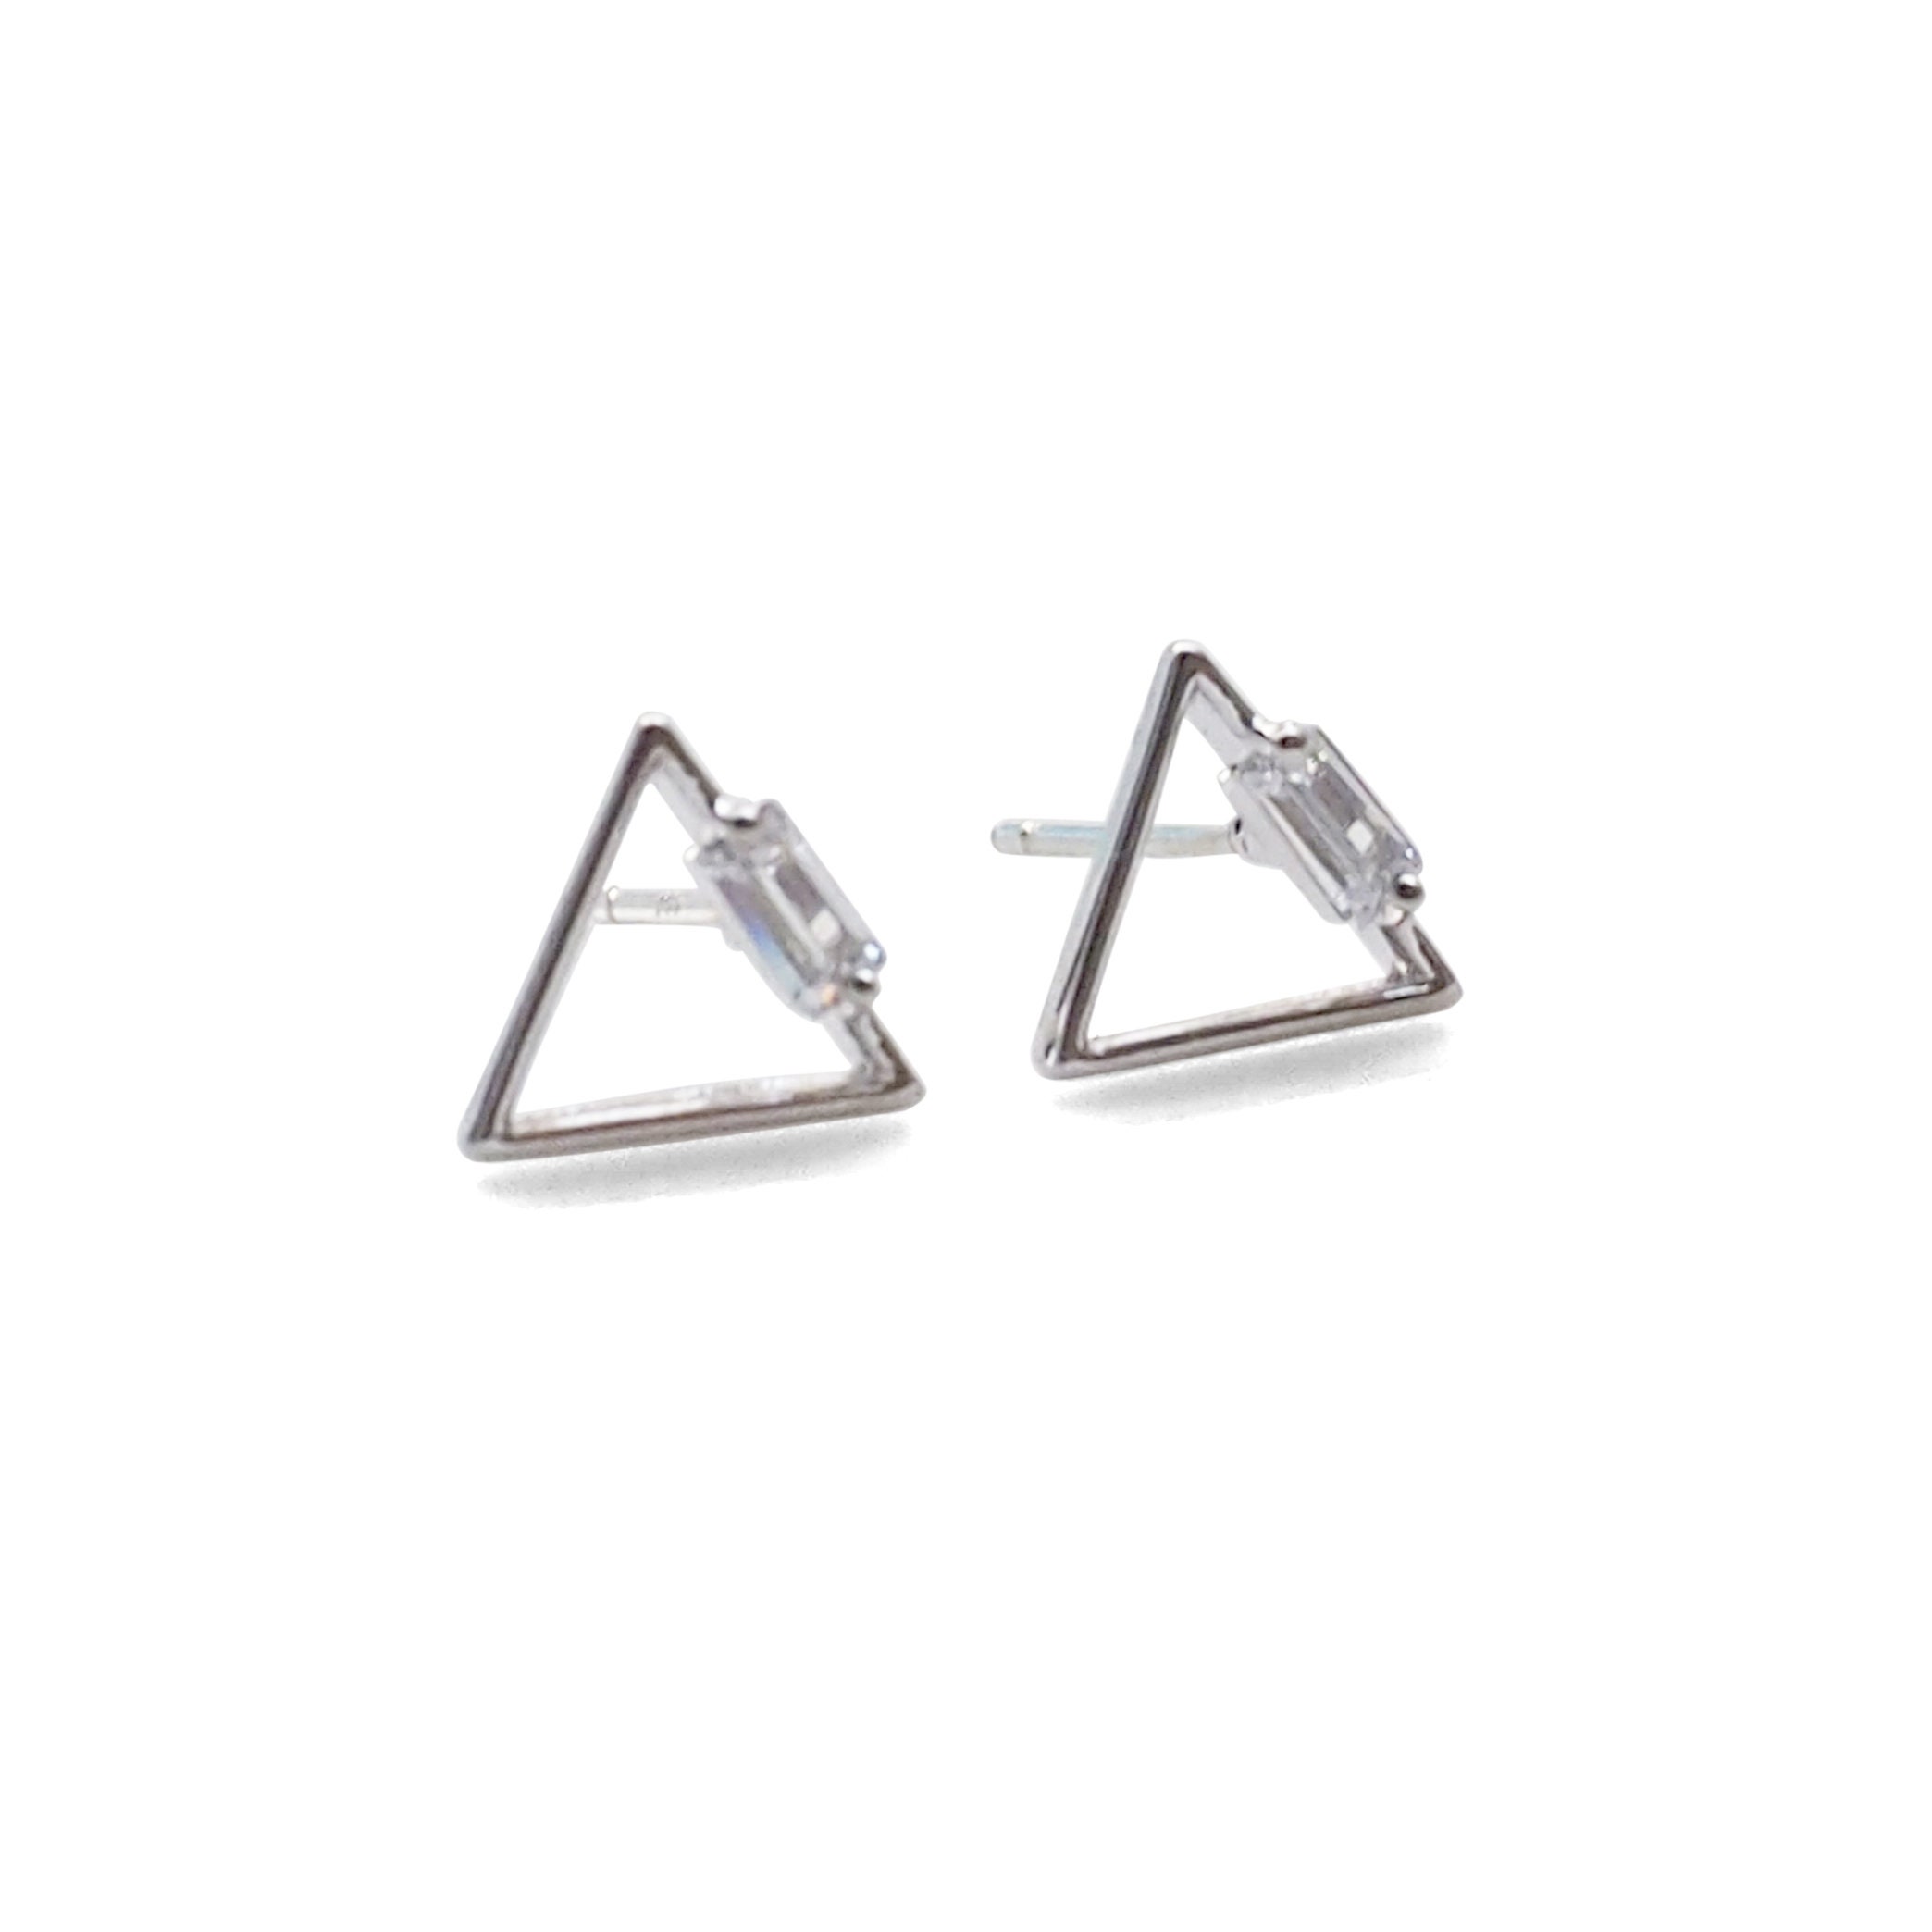 Simple Stud Earrings Sterling Silver Earrings Triangle | Etsy